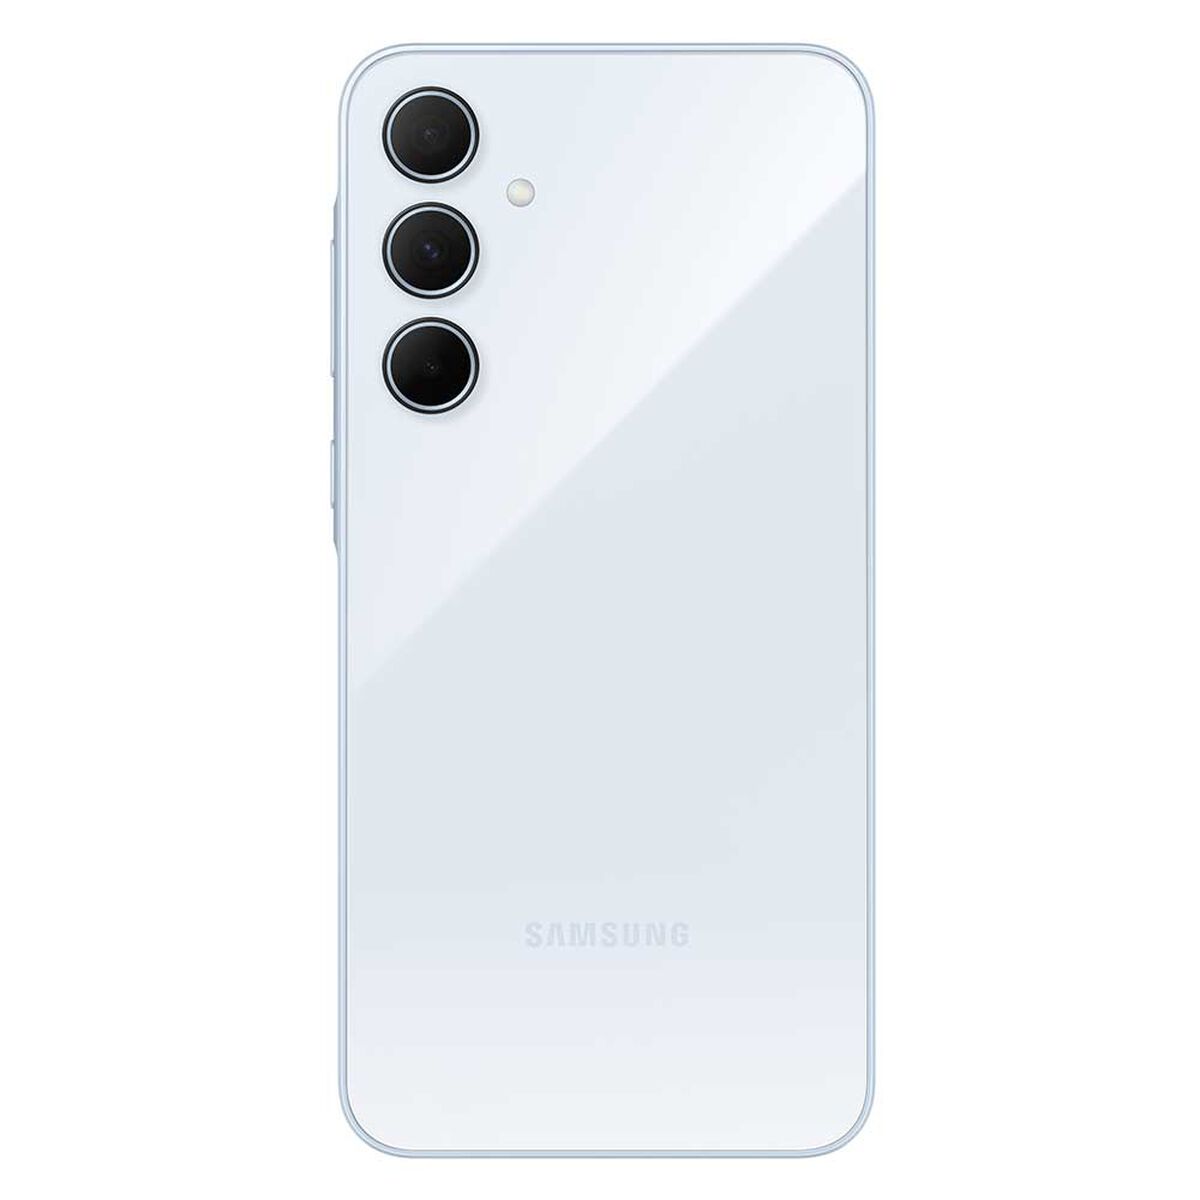 Celular Samsung Galaxy A35 5G 128GB 6,6" Awesome Iceblue Liberado